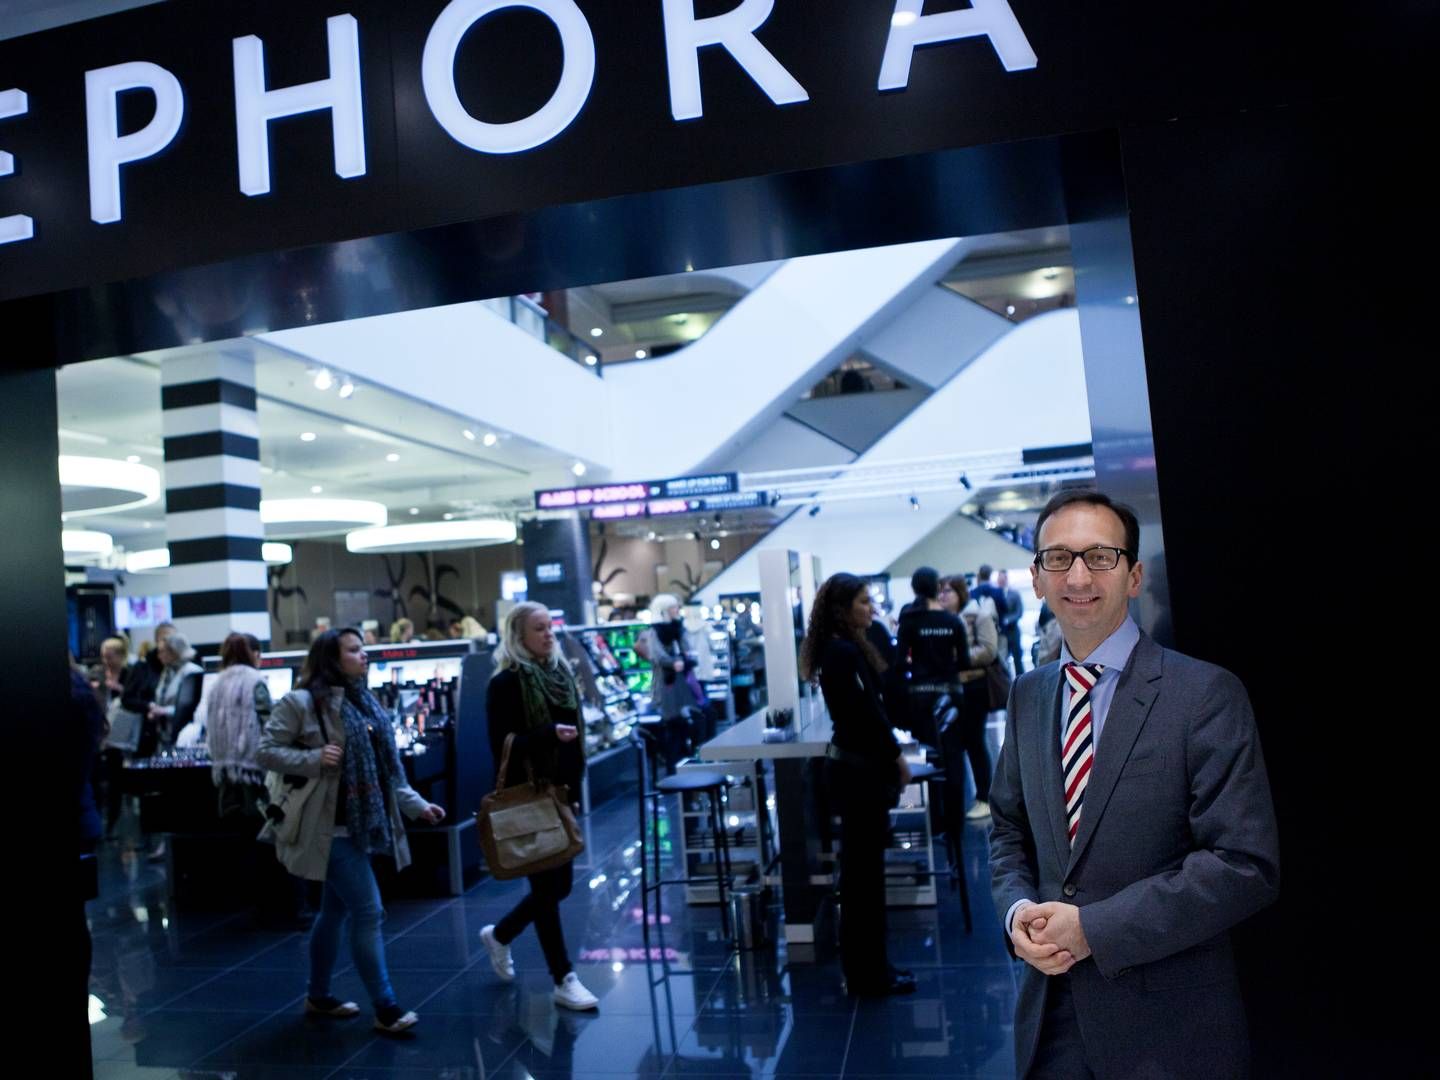 Sephora åbnede i 2012 sin første butik i Danmark på Strøget i København i Illum. | Foto: Gorm Olesen